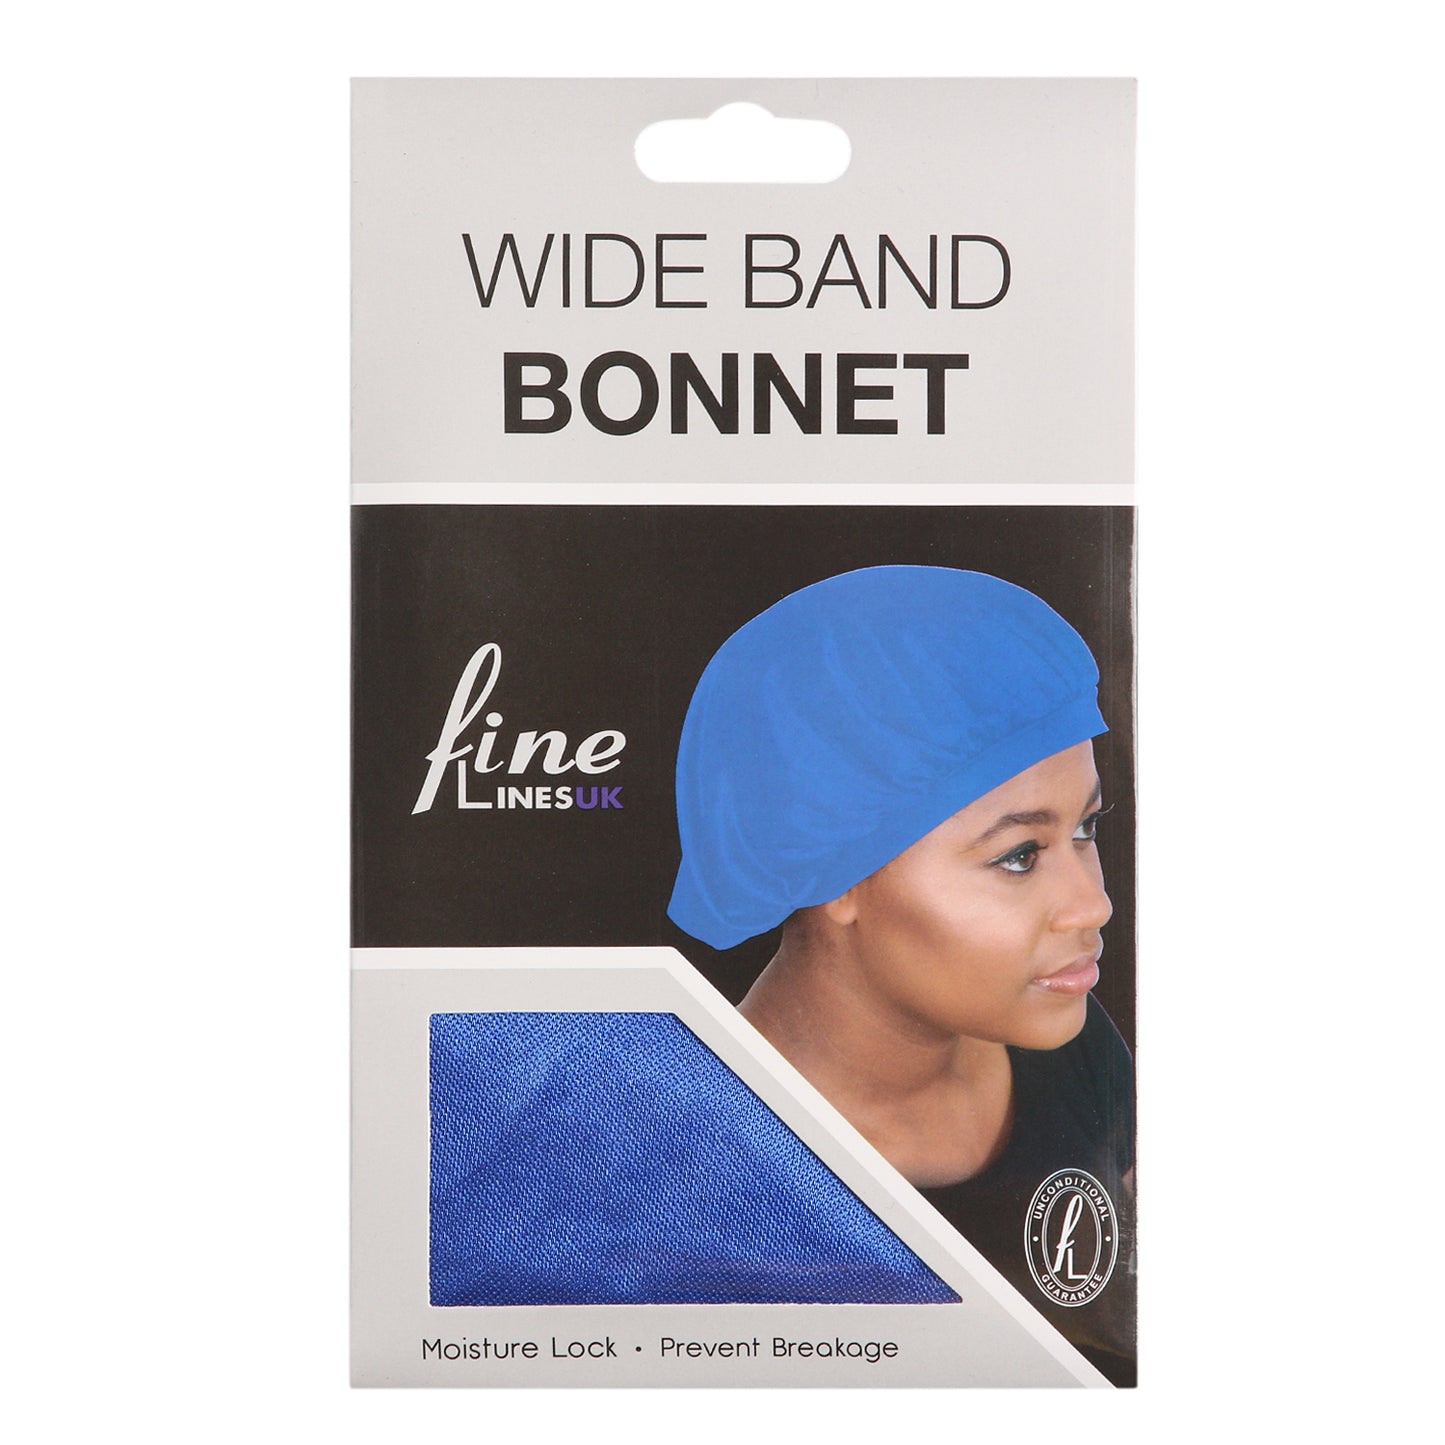 Wide Band Bonnet